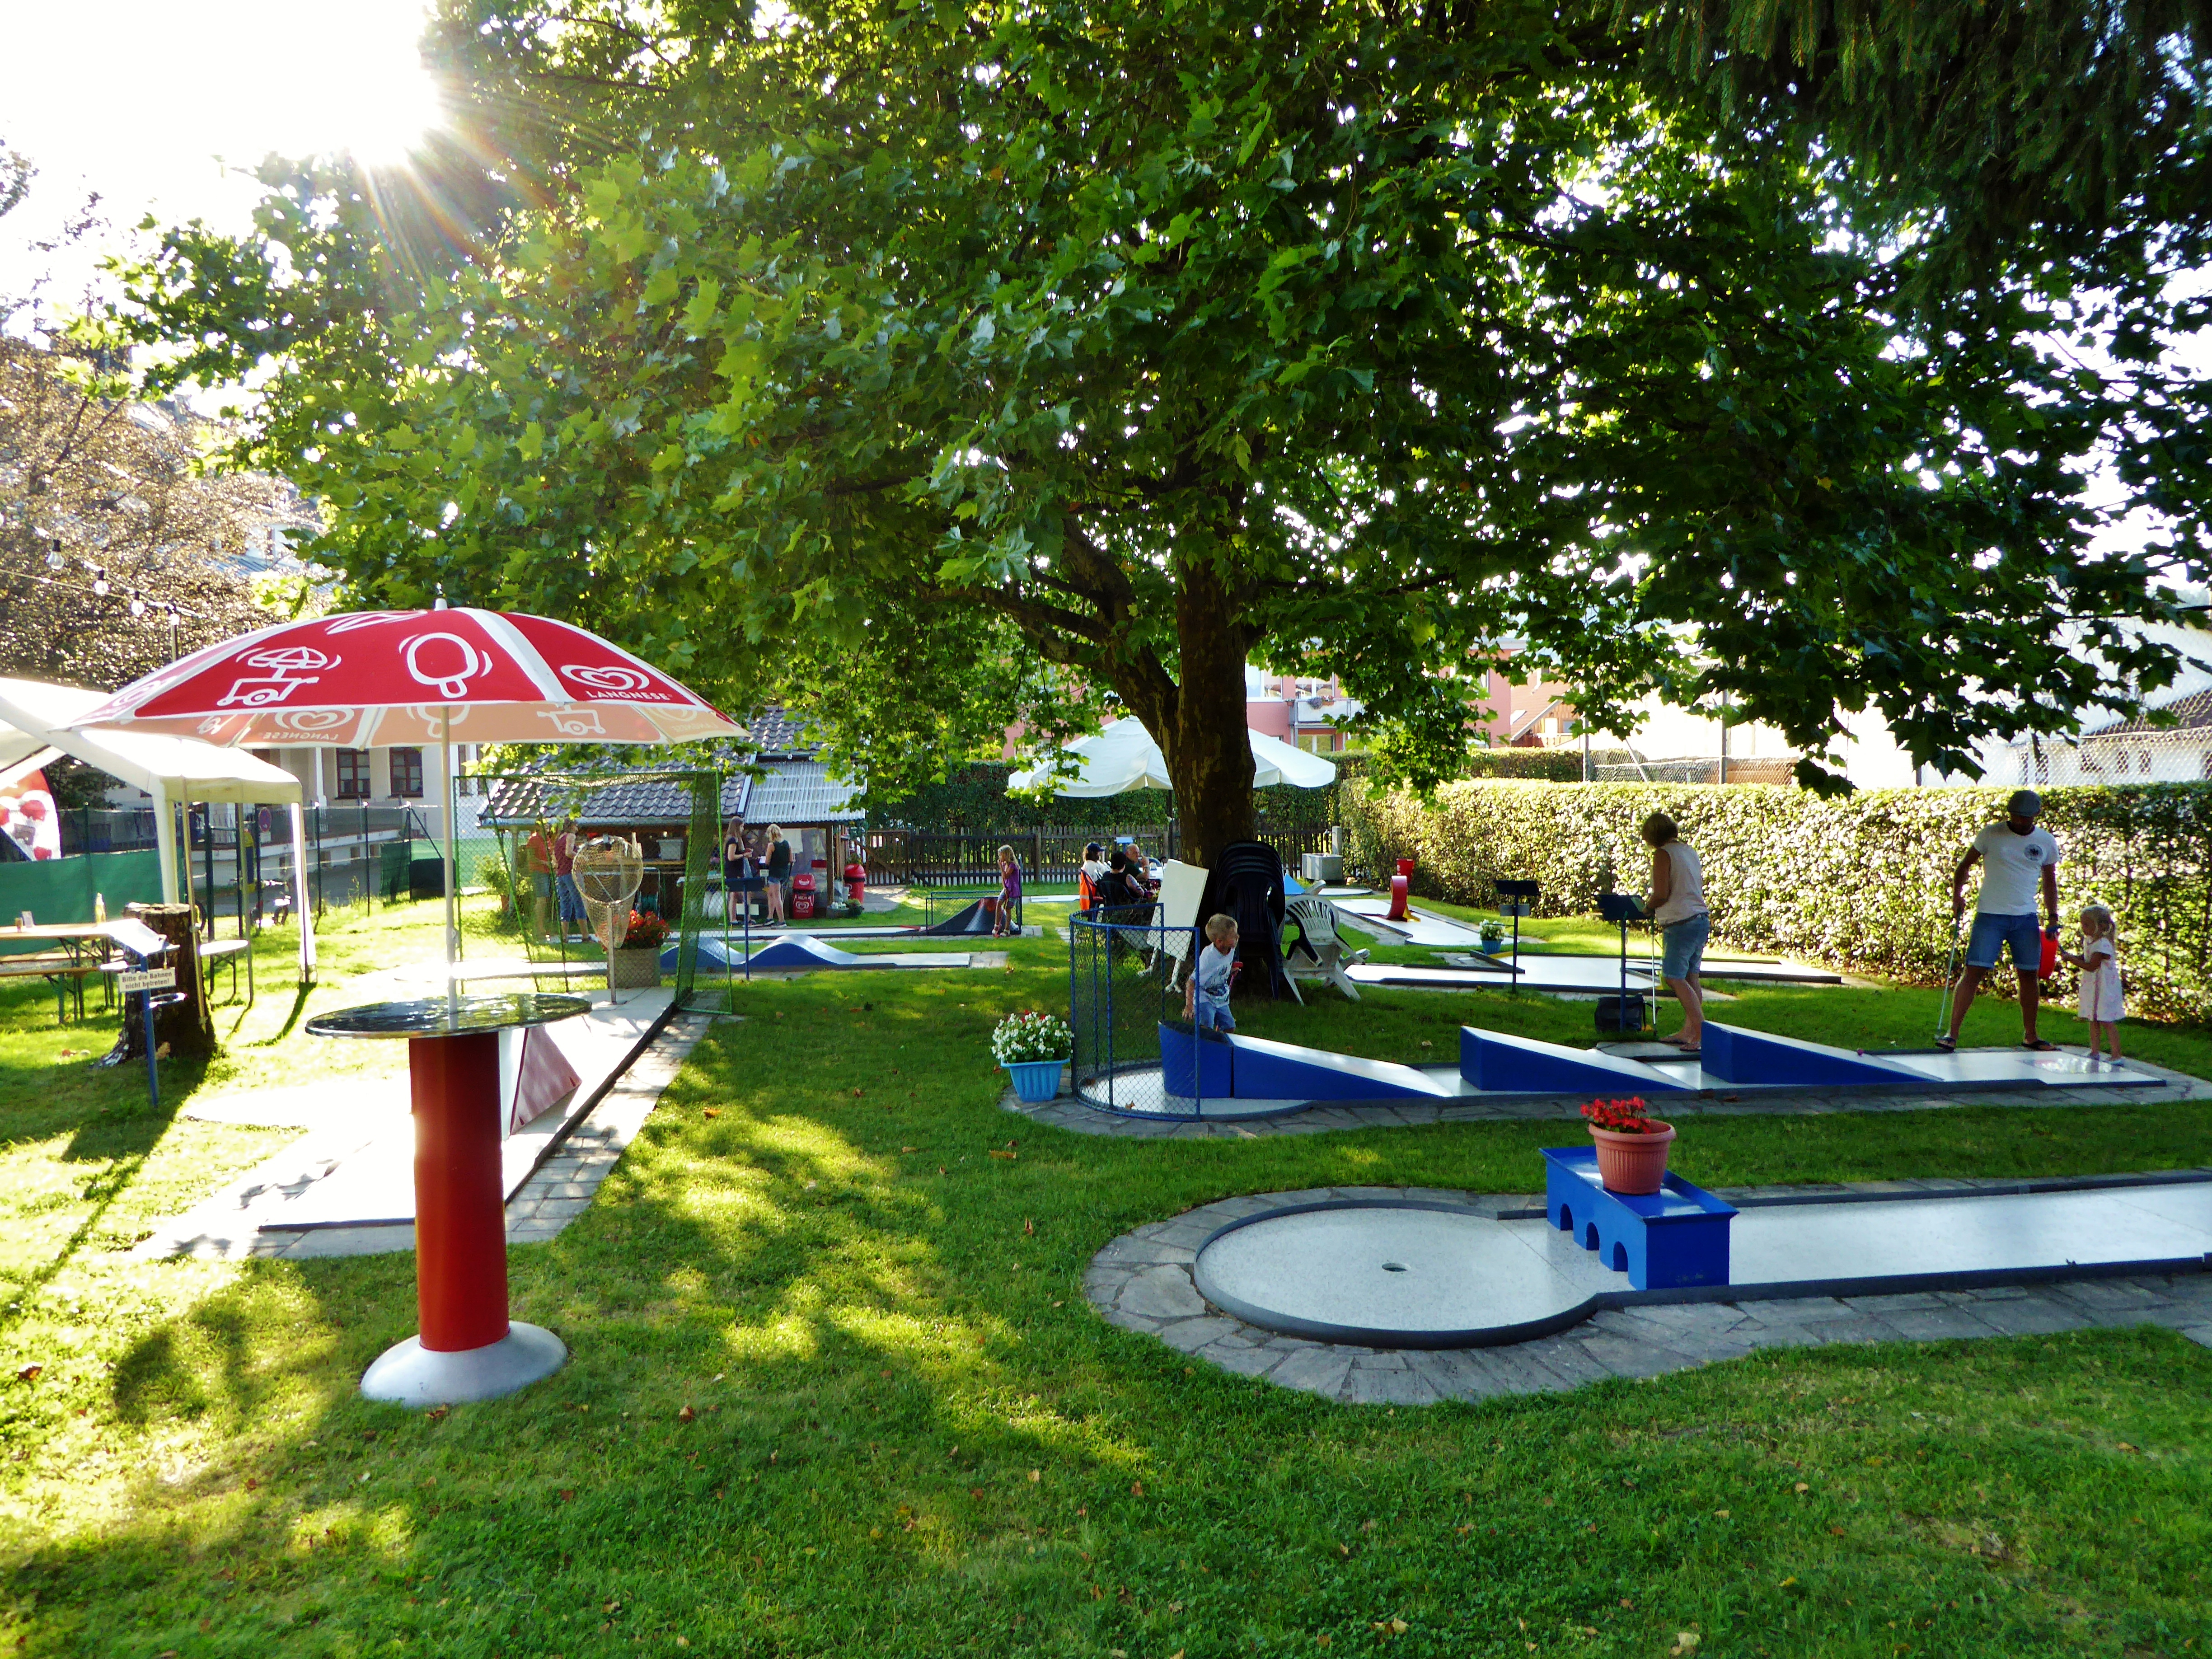  Minigolfplatz auf grüner Wiese mit unterschiedlichen Bahnen zum Spielen - das Bild wird mit Klick vergrößert 